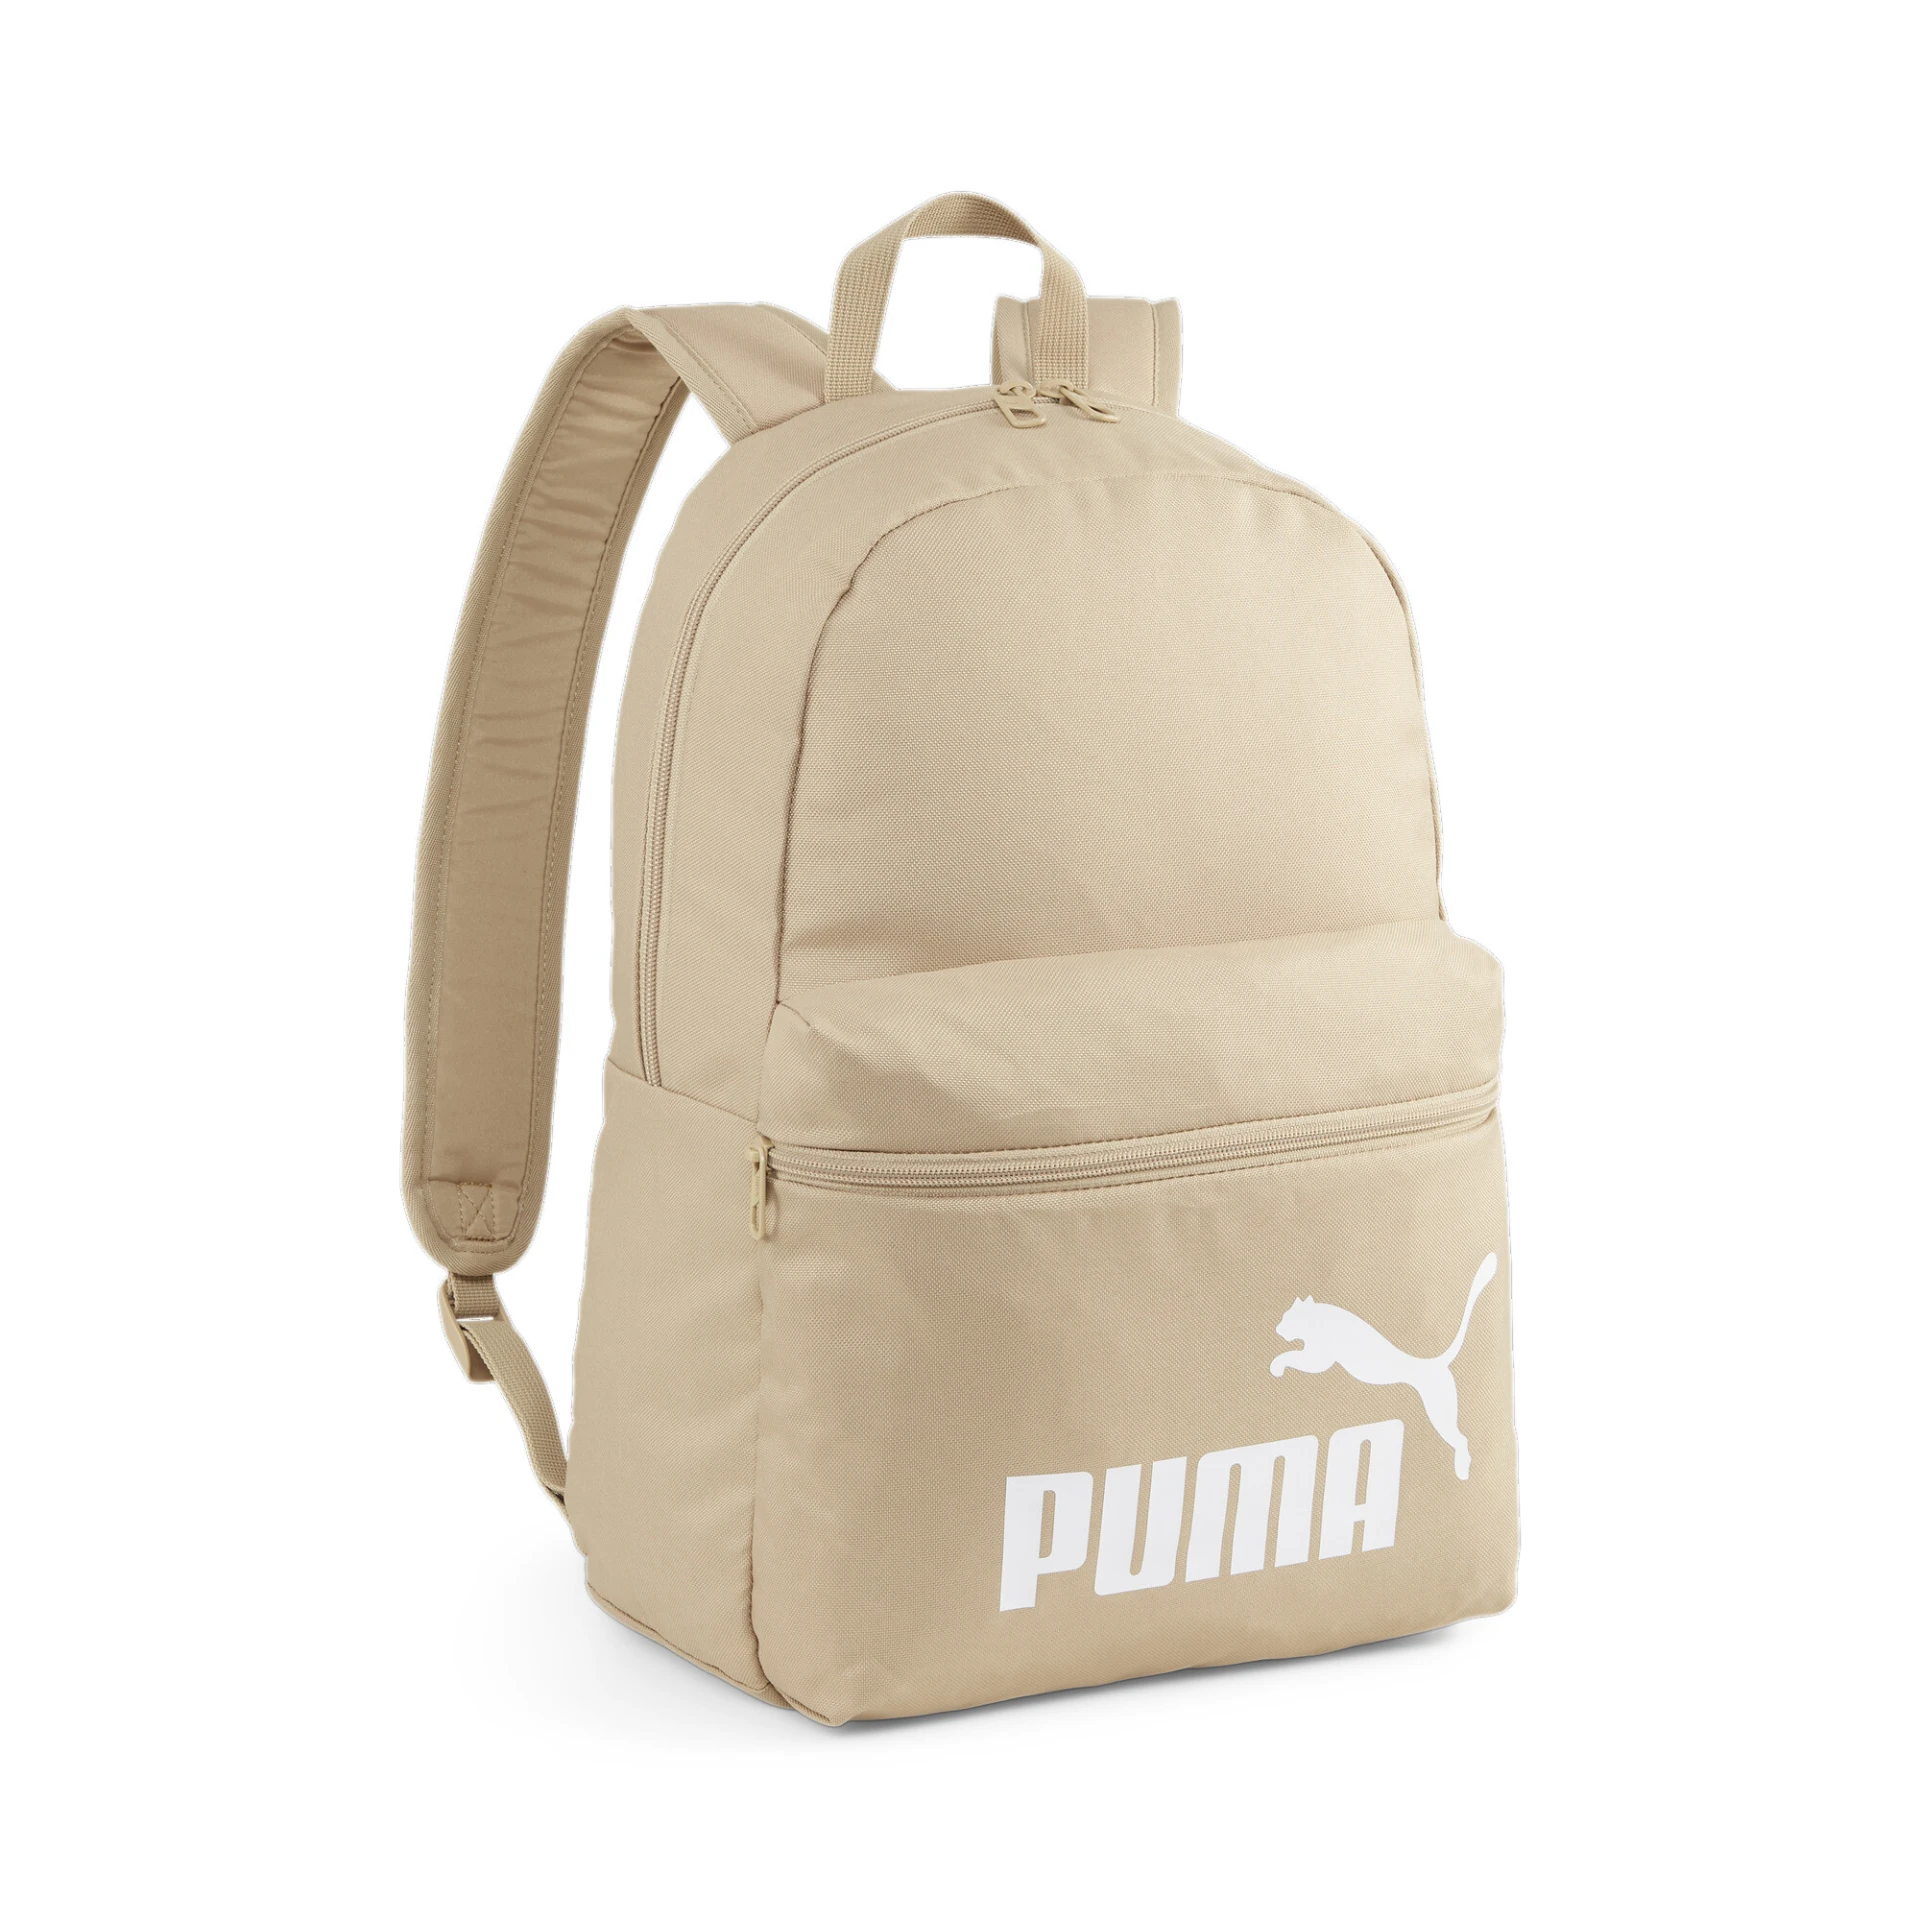 PUMA Phase_Backpack 079943 016 PRAIRIE TAN